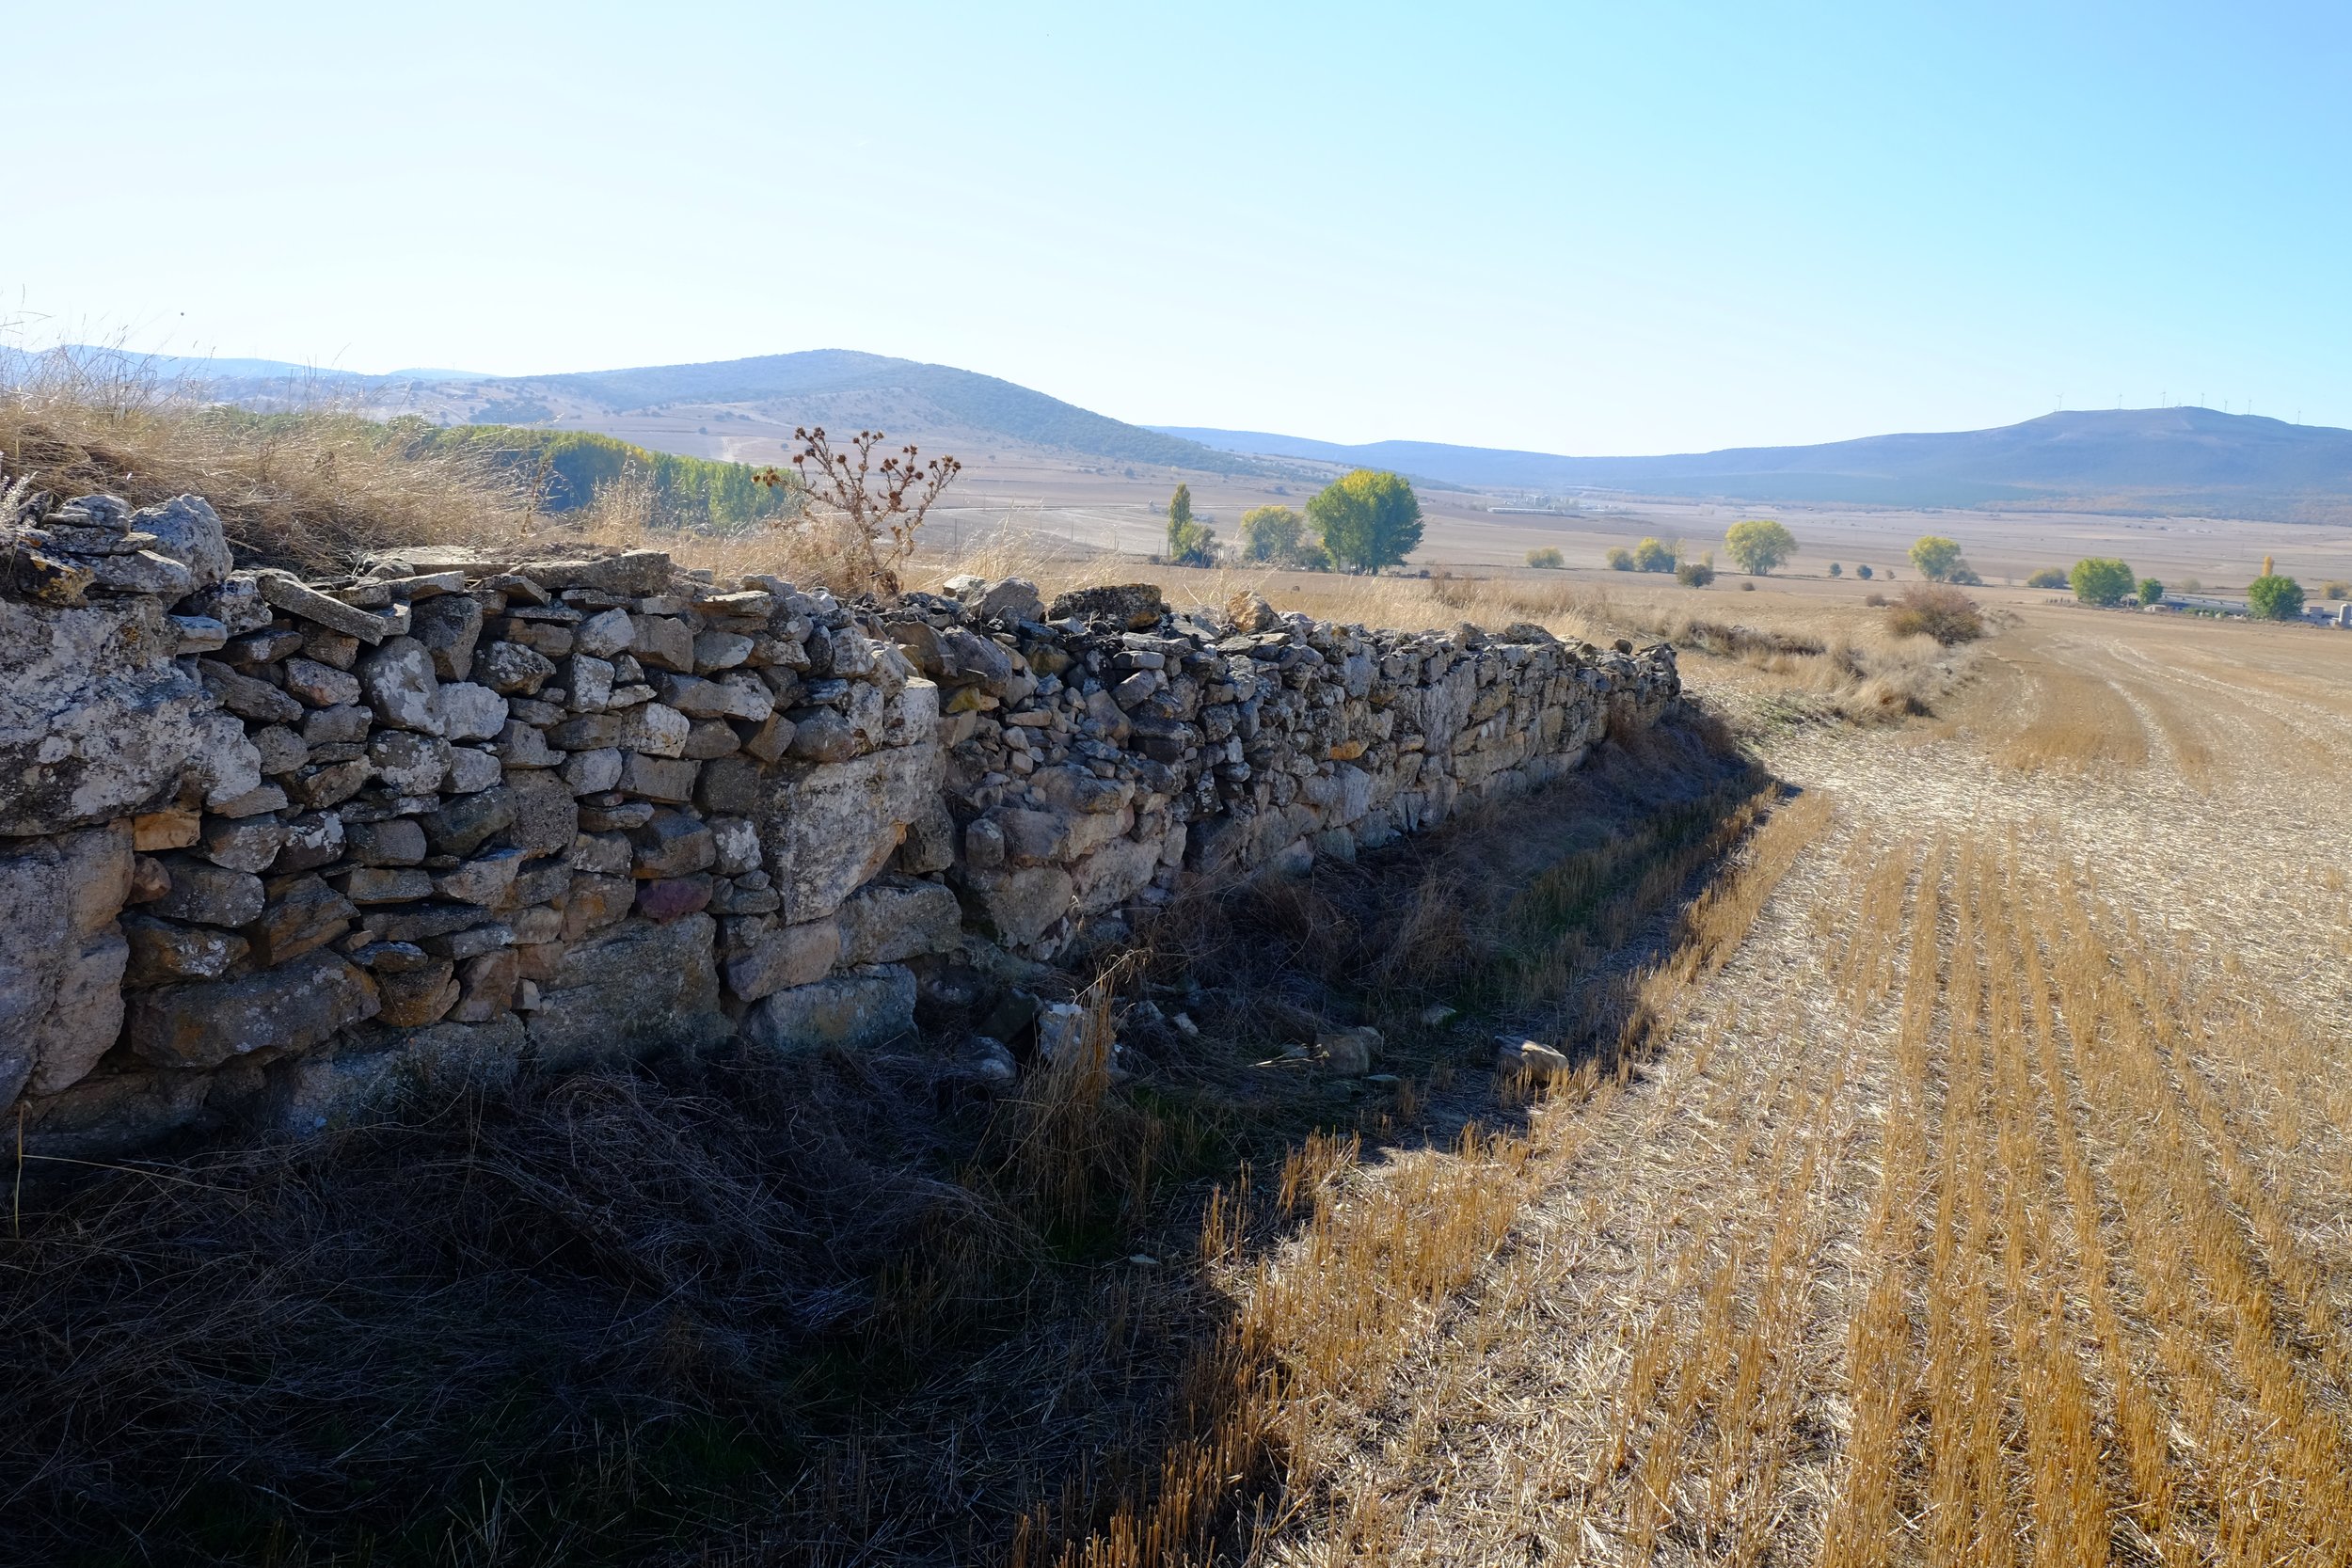   Ruins of defensive wall of Arekoratas/Augustóbriga in Muro de Ágreda, Soria province of Spain  